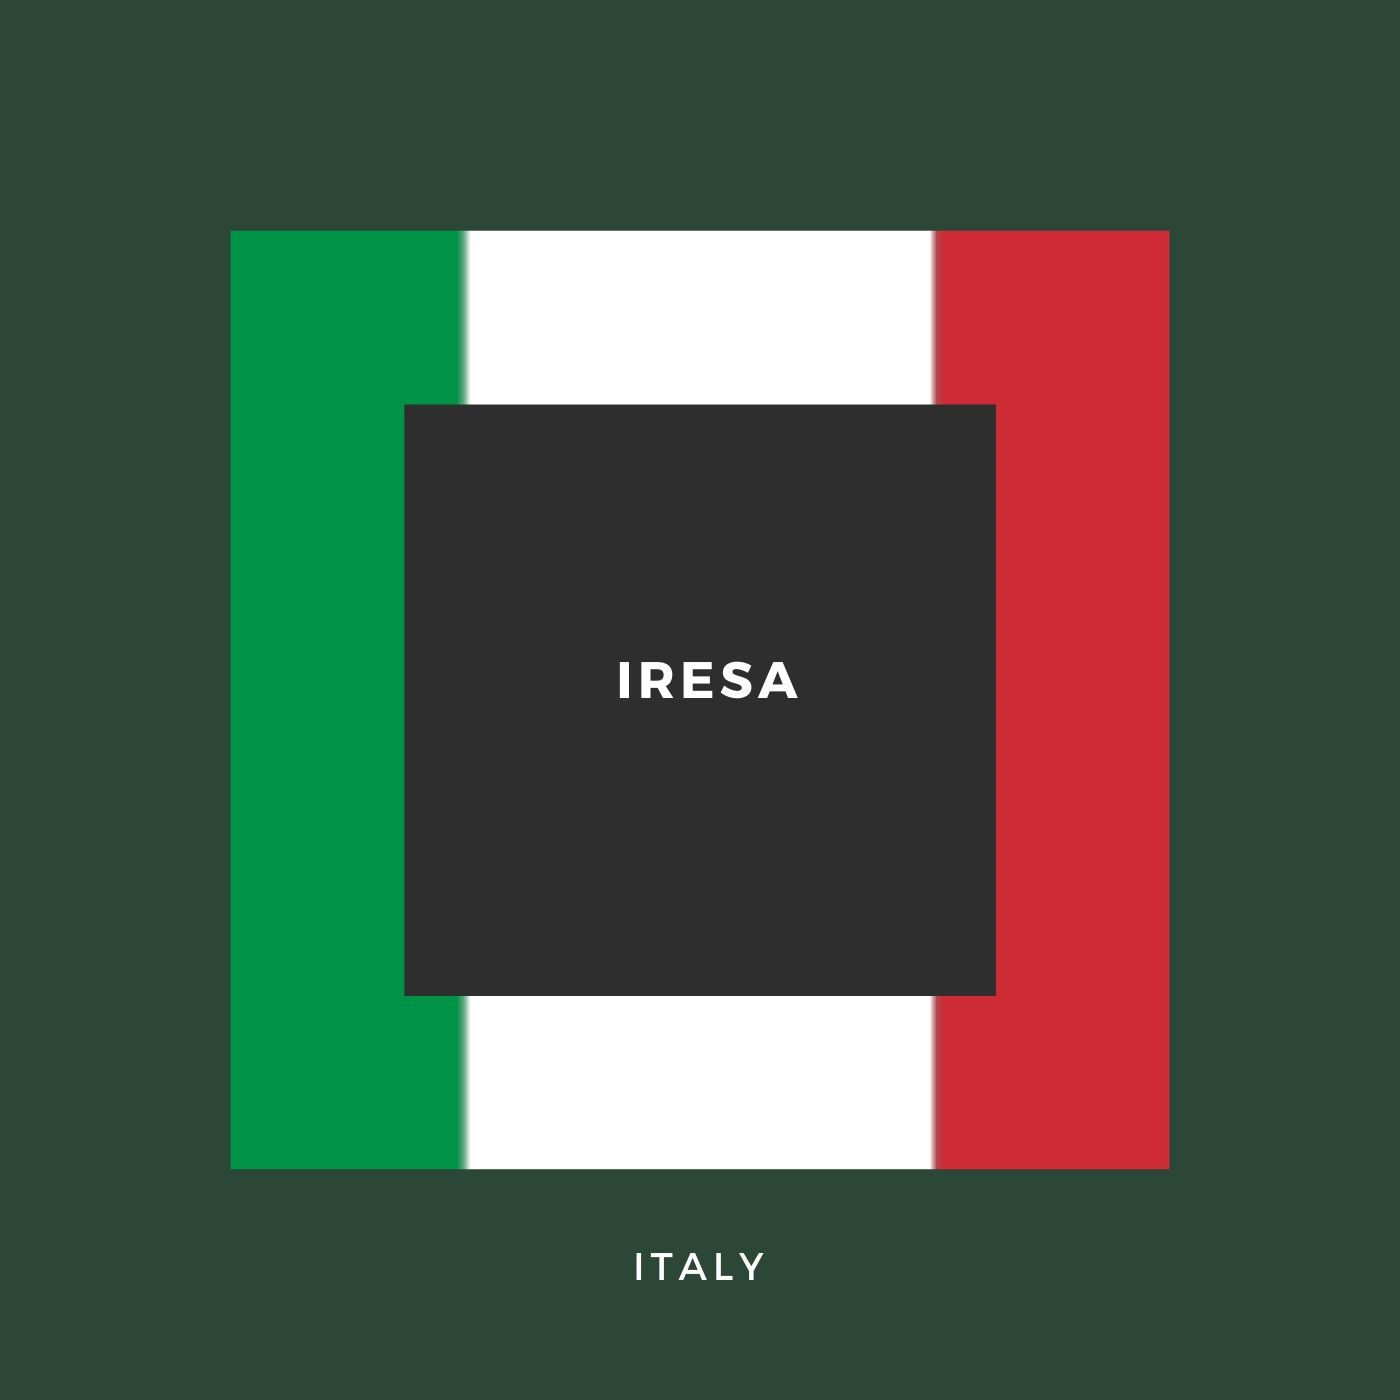 Italian IRESA